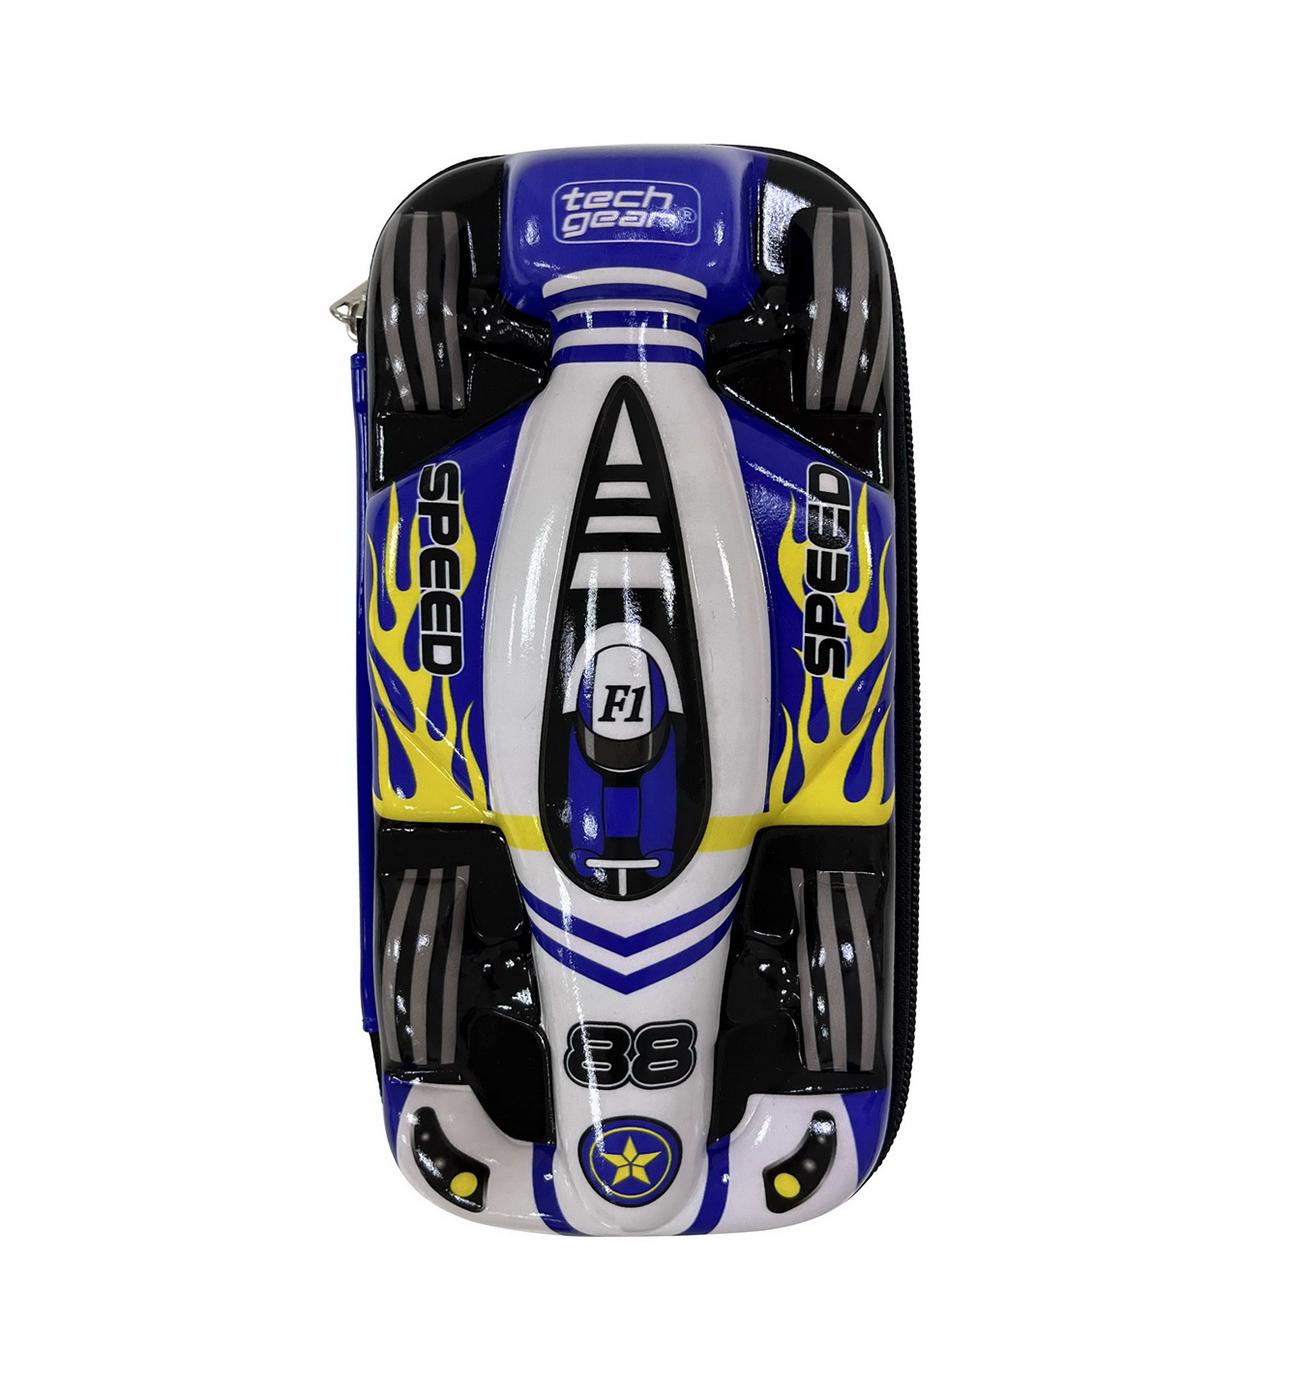 Tech Gear Race Car Pencil Case; image 4 of 4